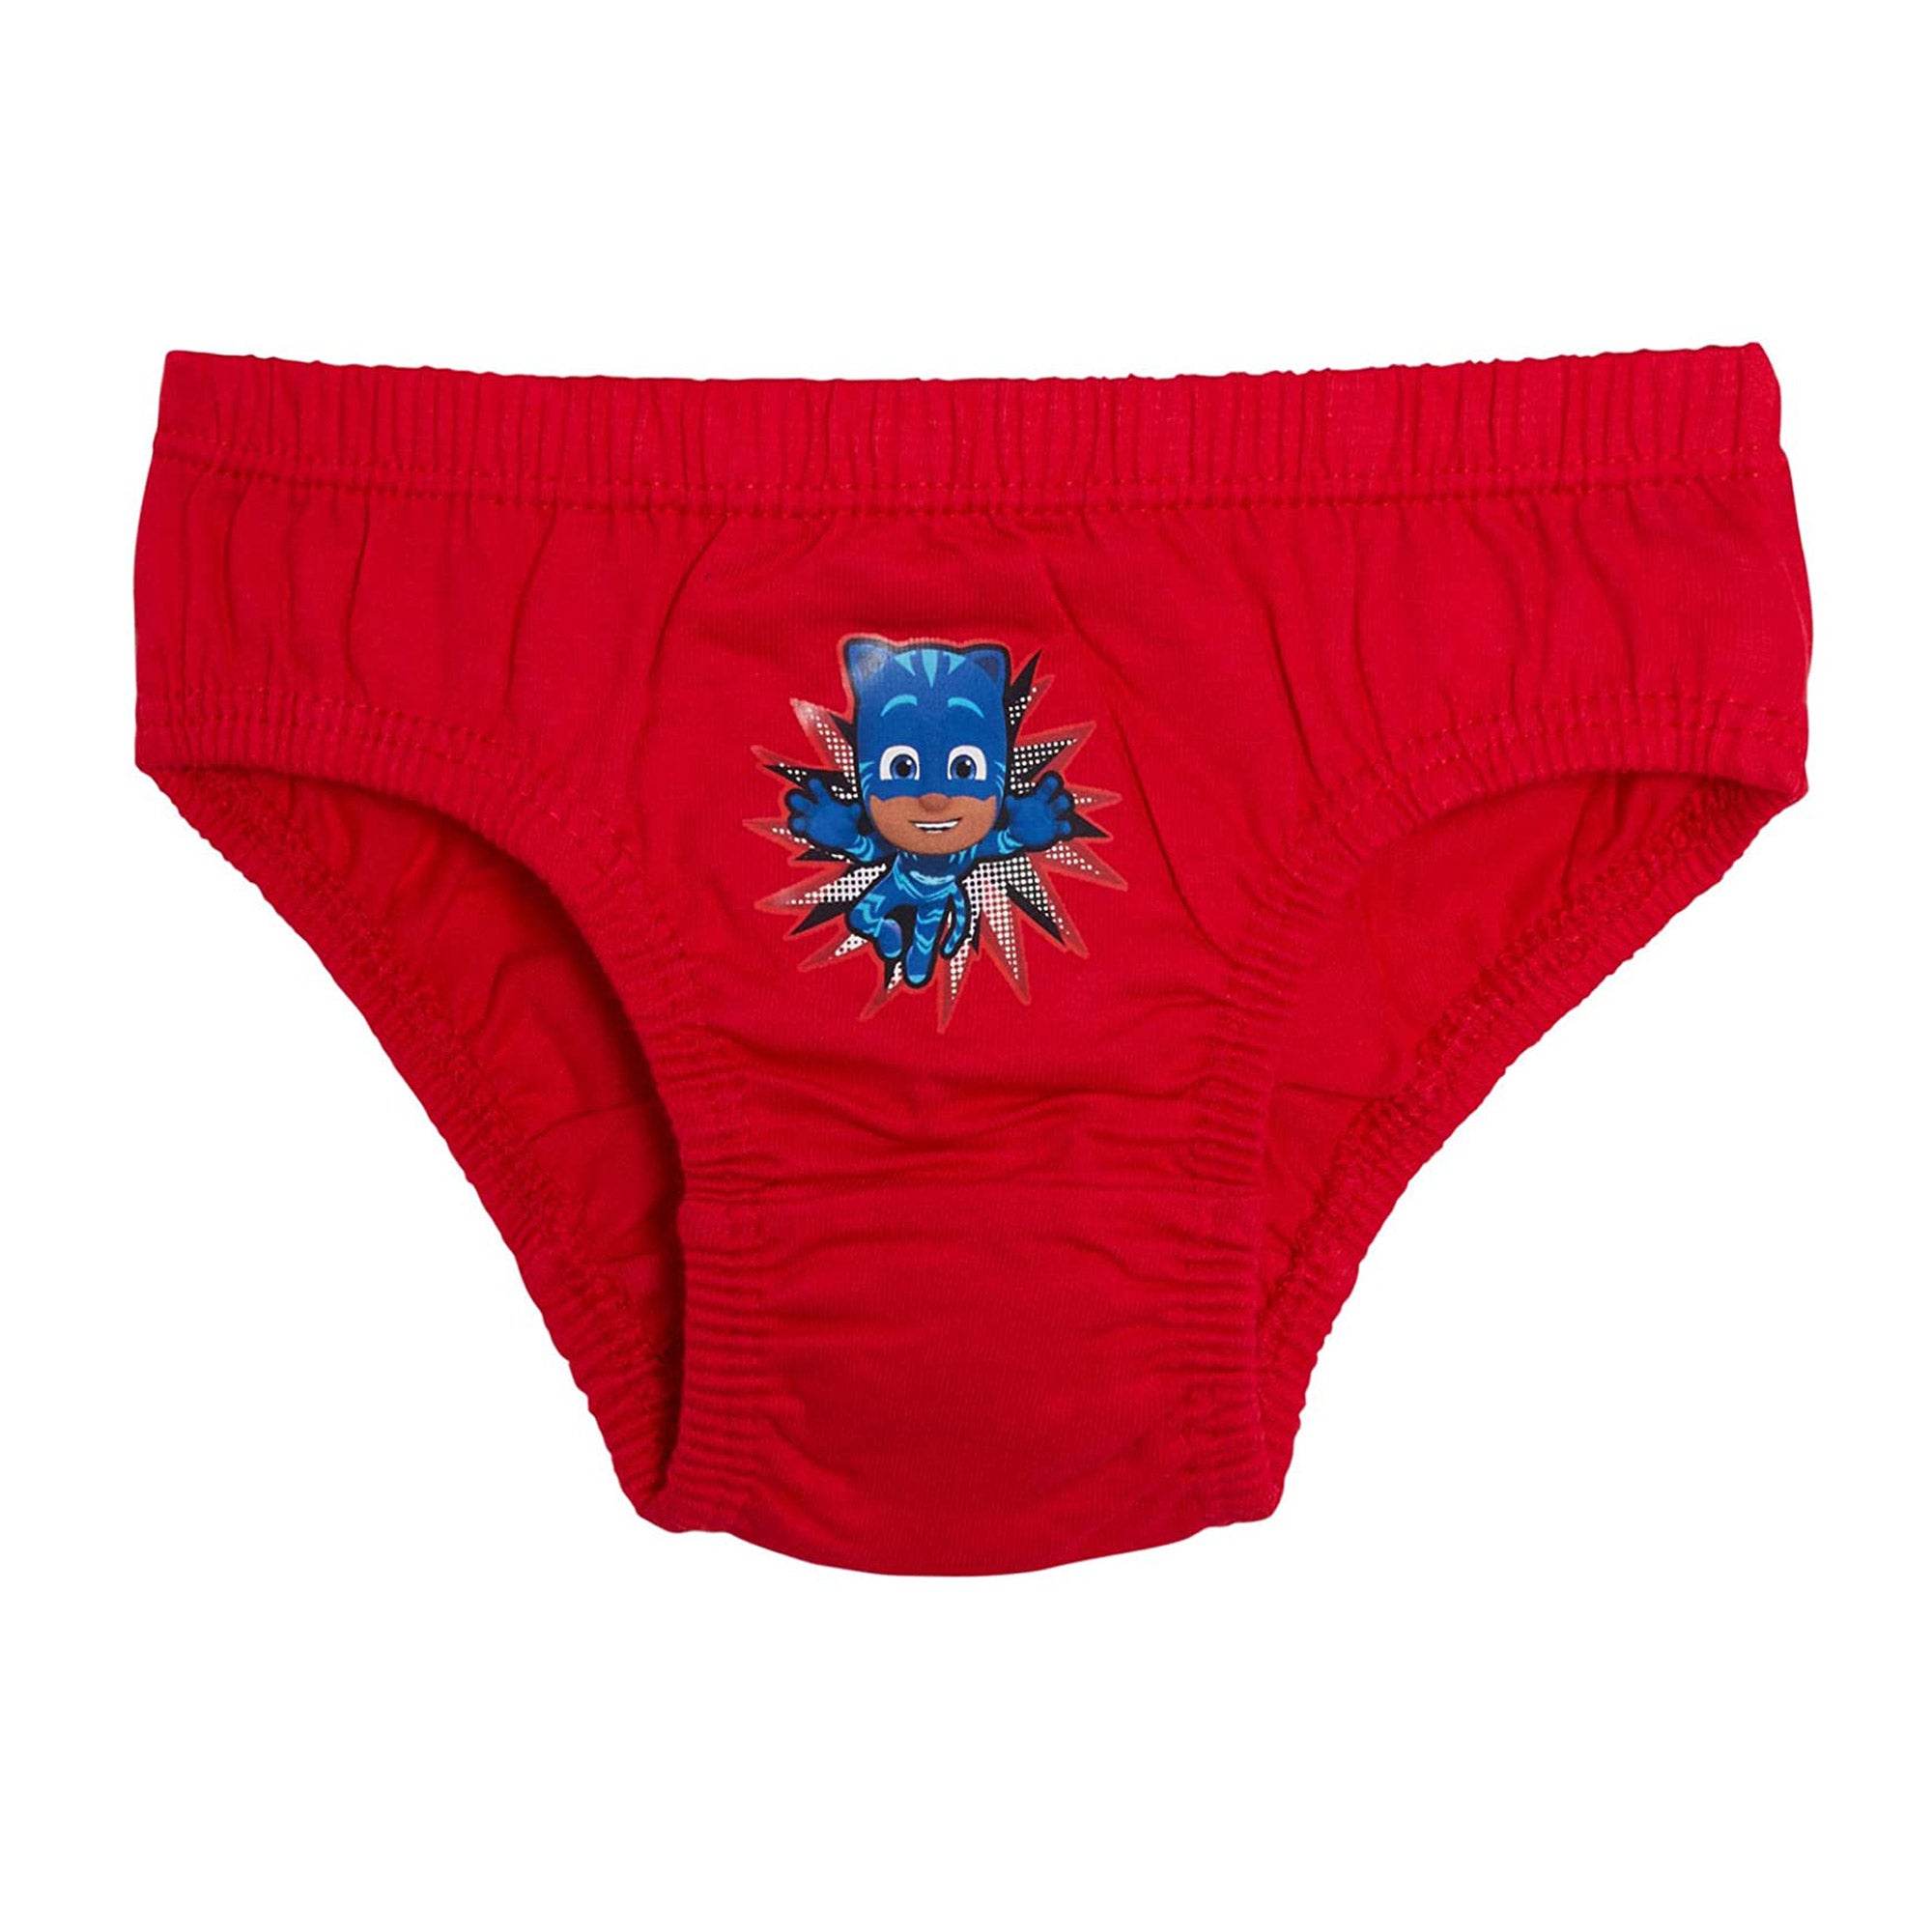 PJ Masks Kids Underwear Briefs Pants Red